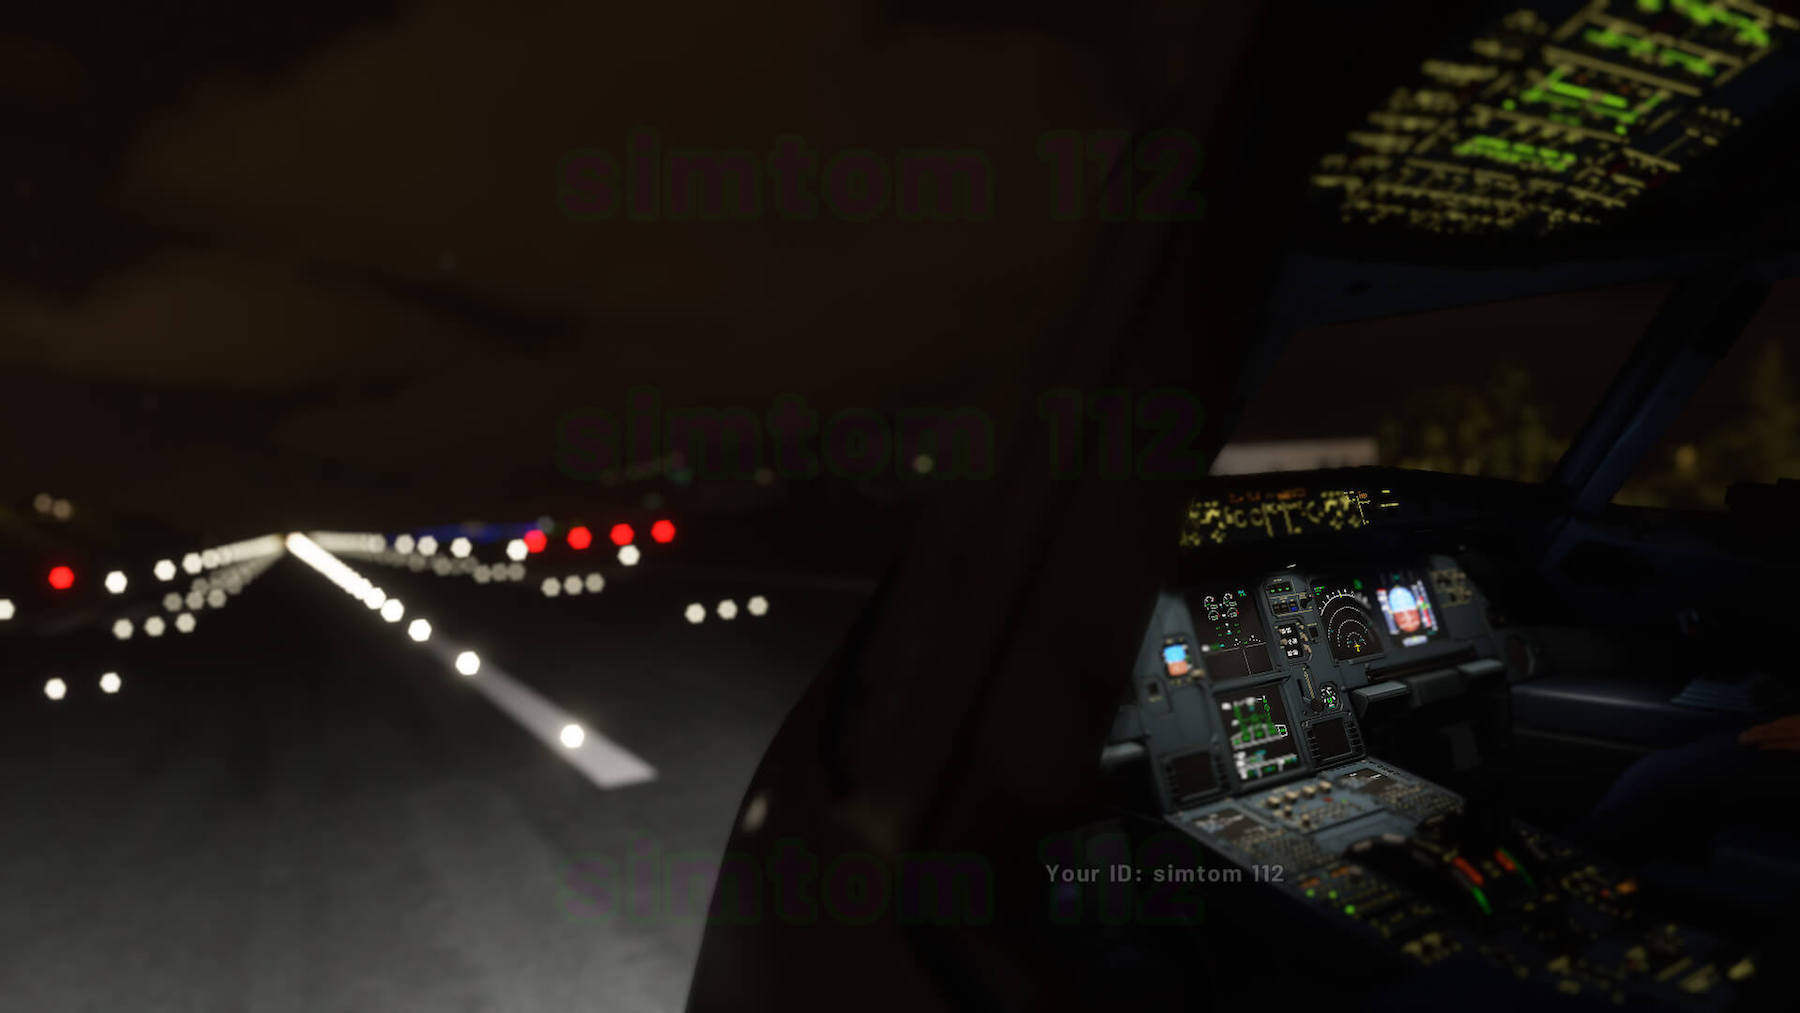 microsoft flight simulator 2016 mac